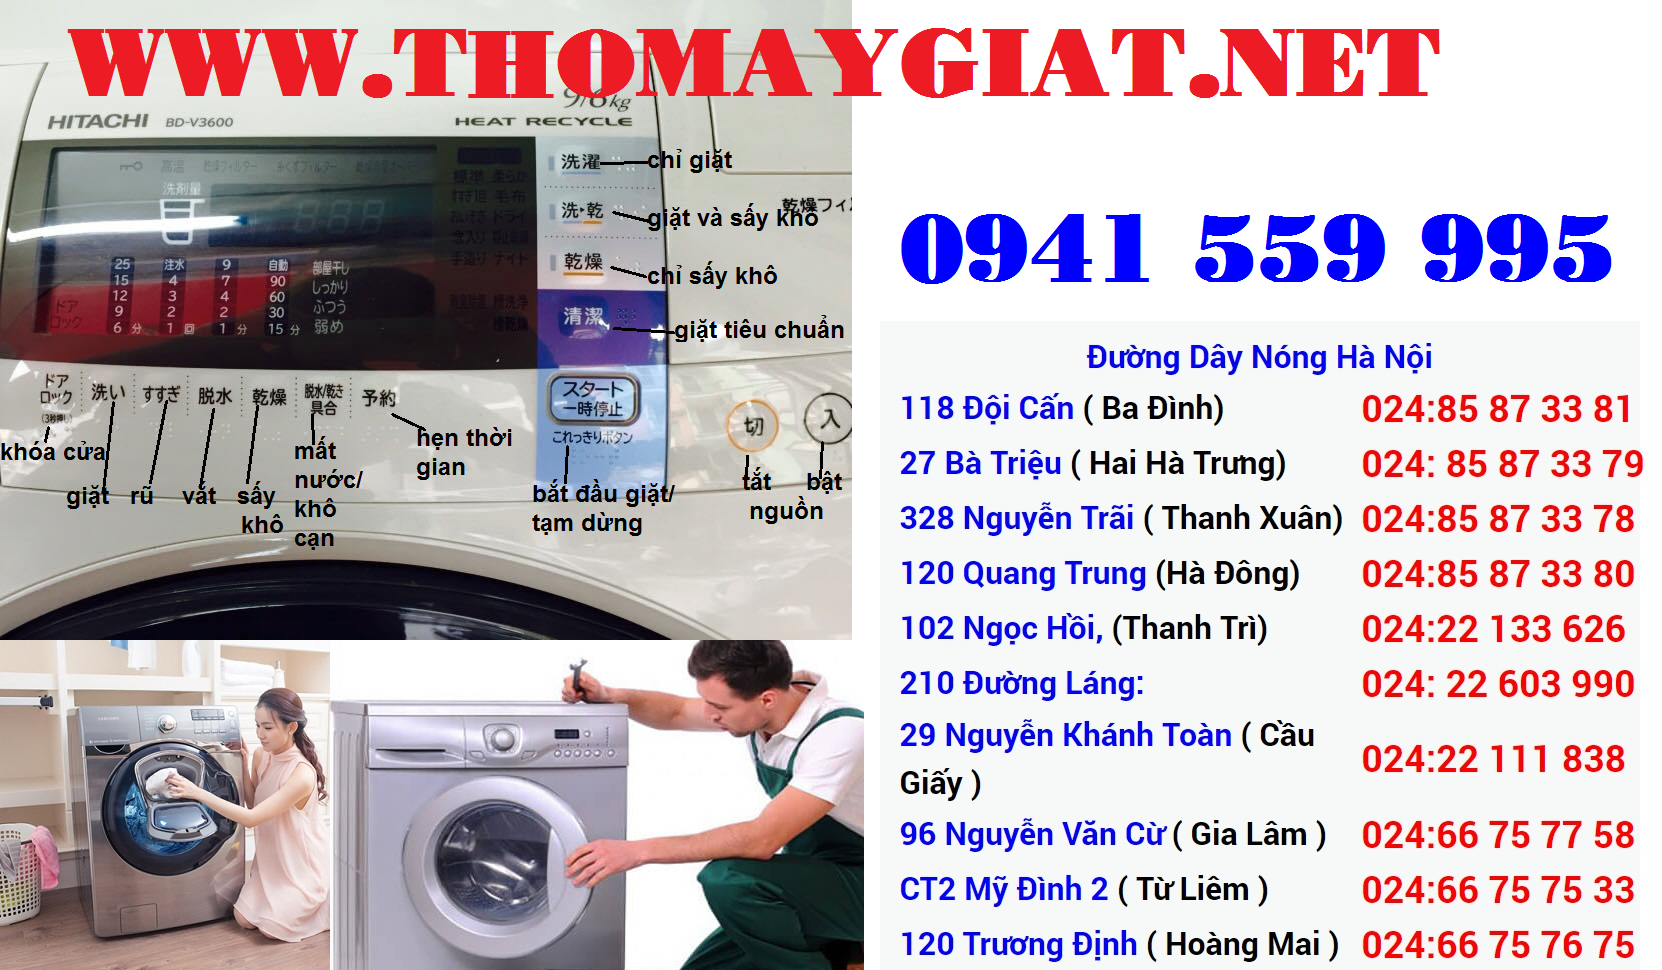 Sửa máy giặt với những lỗi cơ bản thường gặp Sua-may-giat-hitachi-1